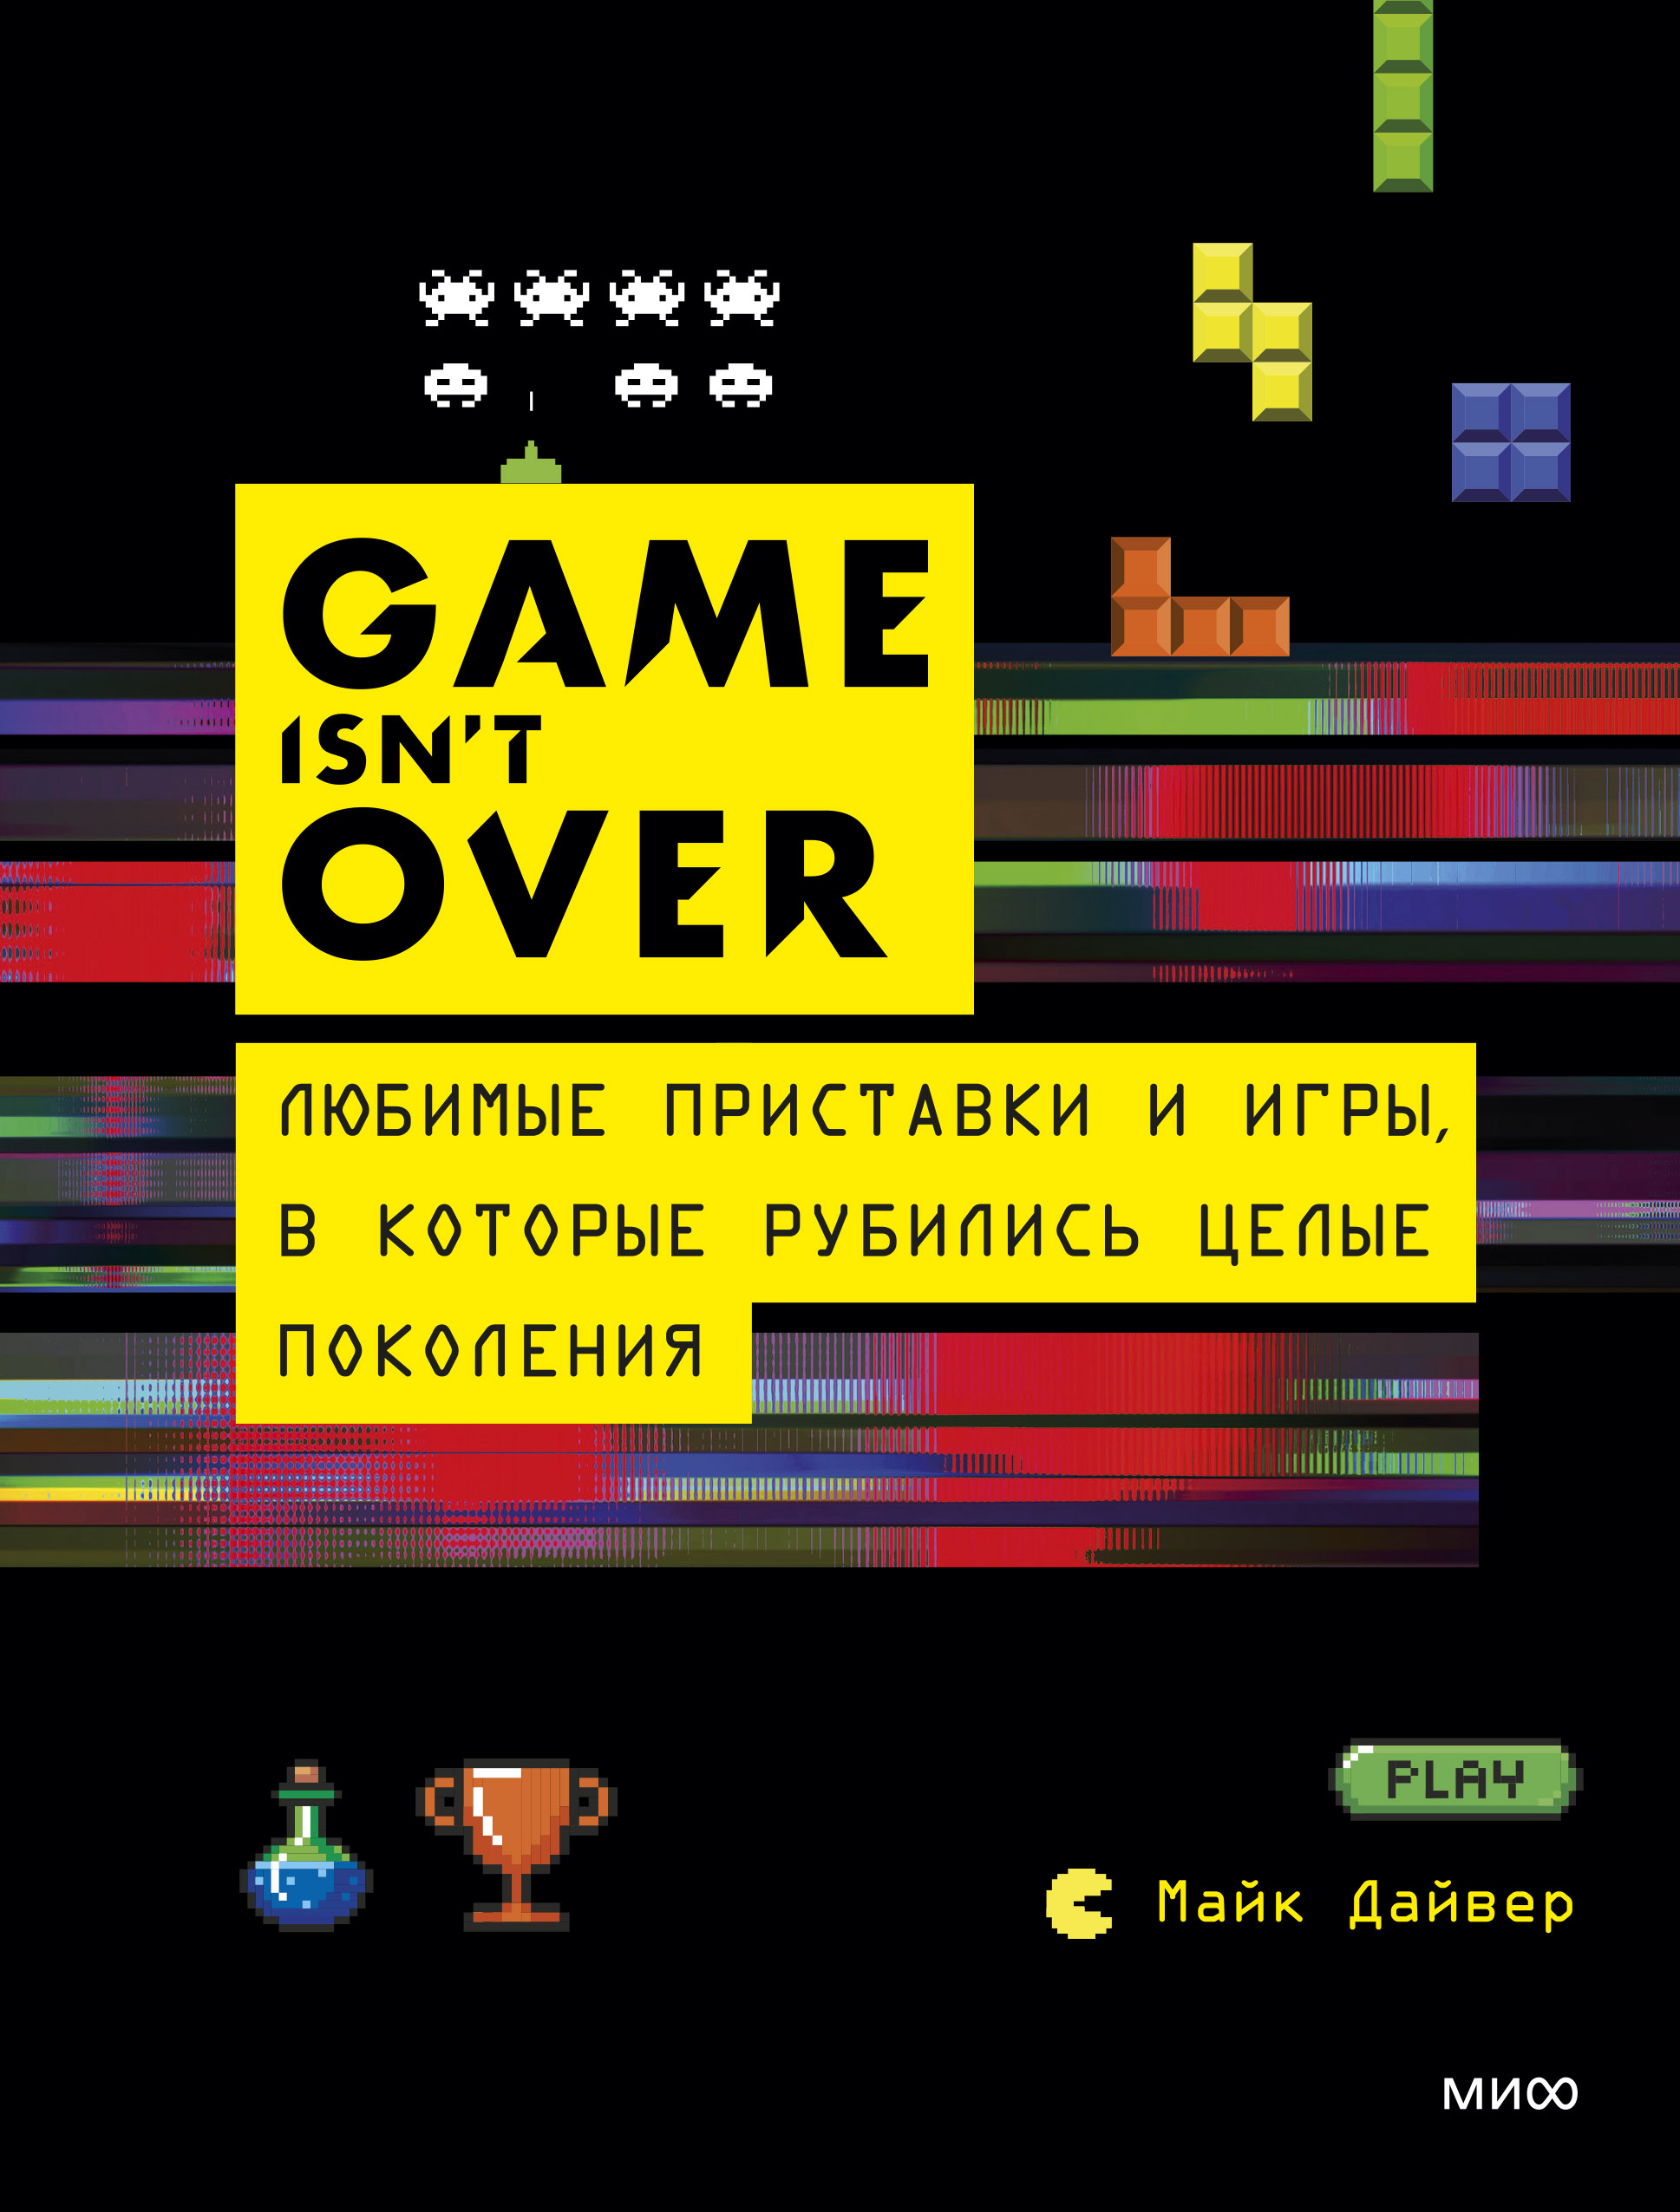 Дайвер М. GAME isn't OVER. Любимые приставки и игры, в которые рубились целые поколения 